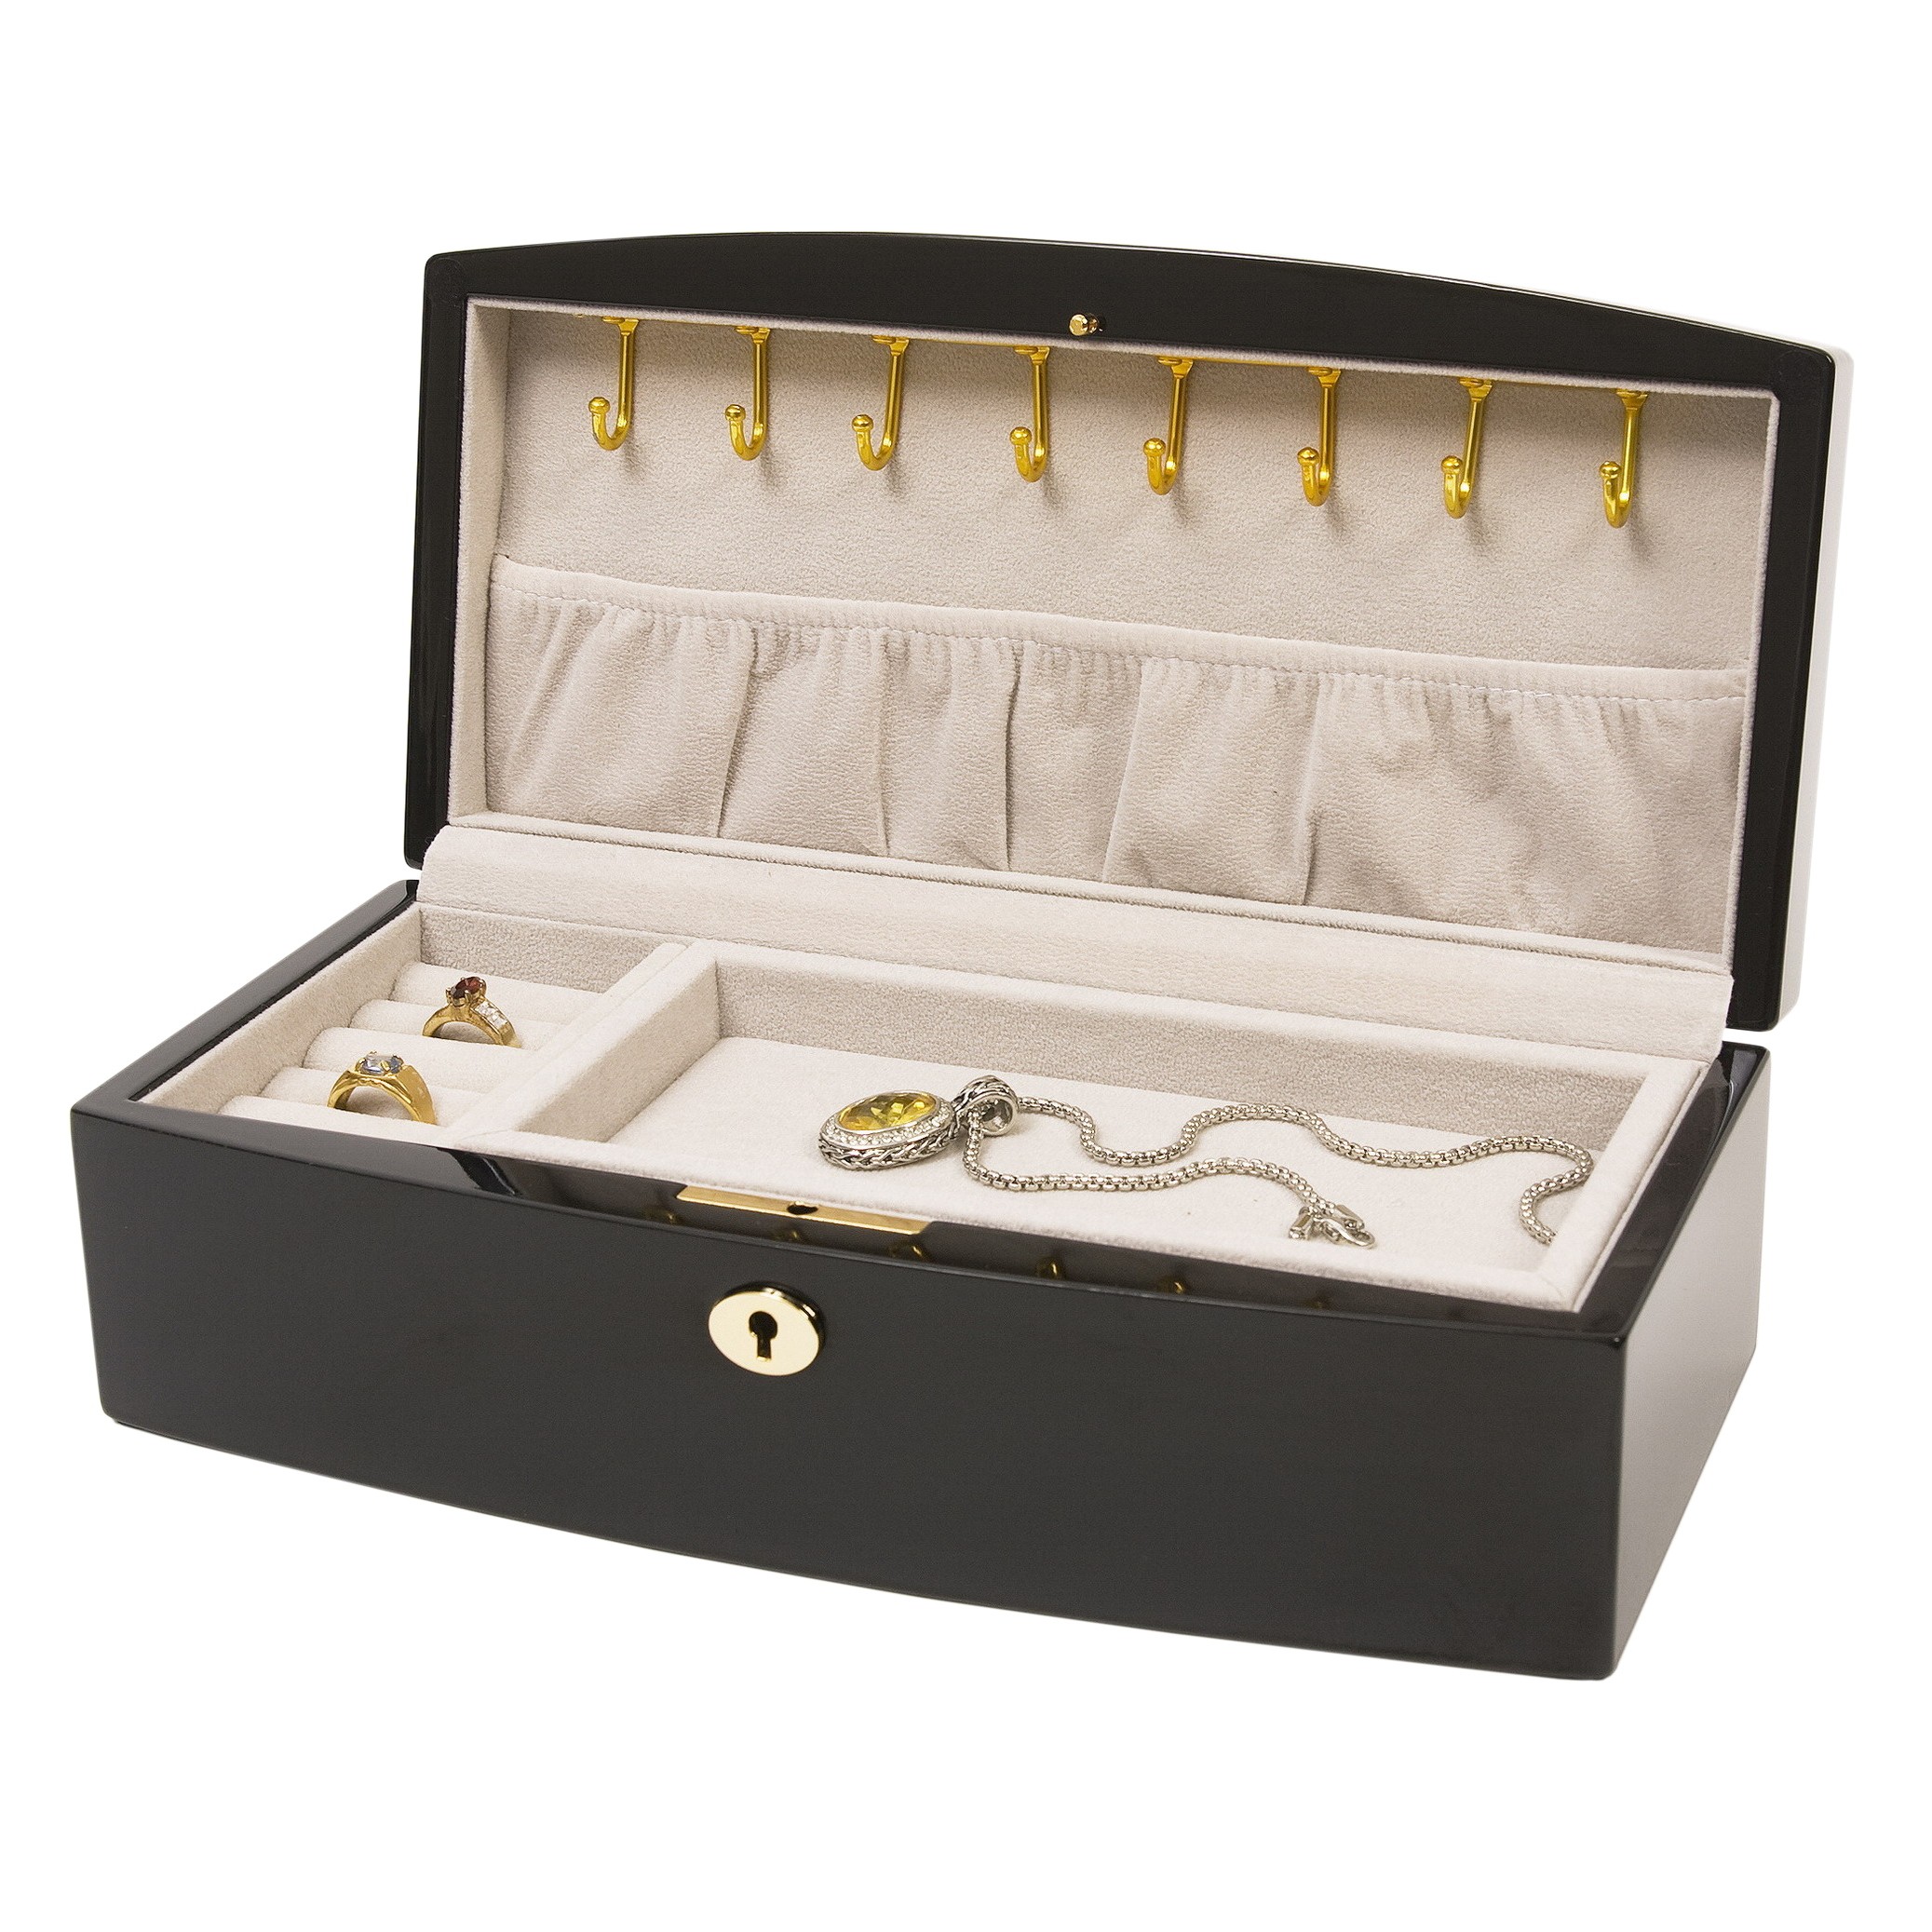 Italian inlaid burlwood jewelry box w necklace hooks